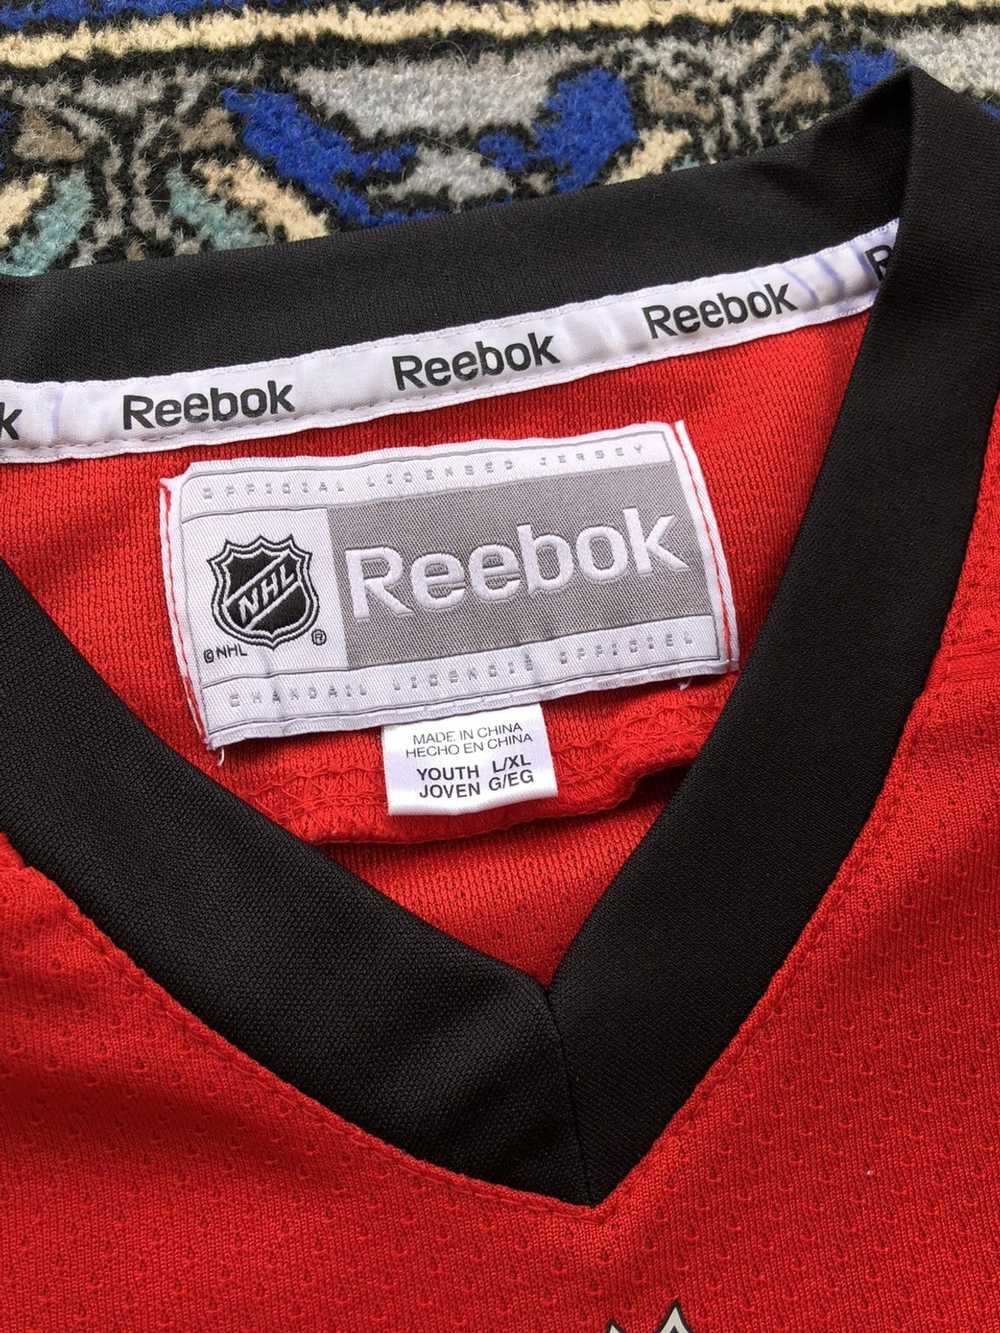 Reebok #81 Marian Hossa Chicago Blackhawks Stitched USA Flag